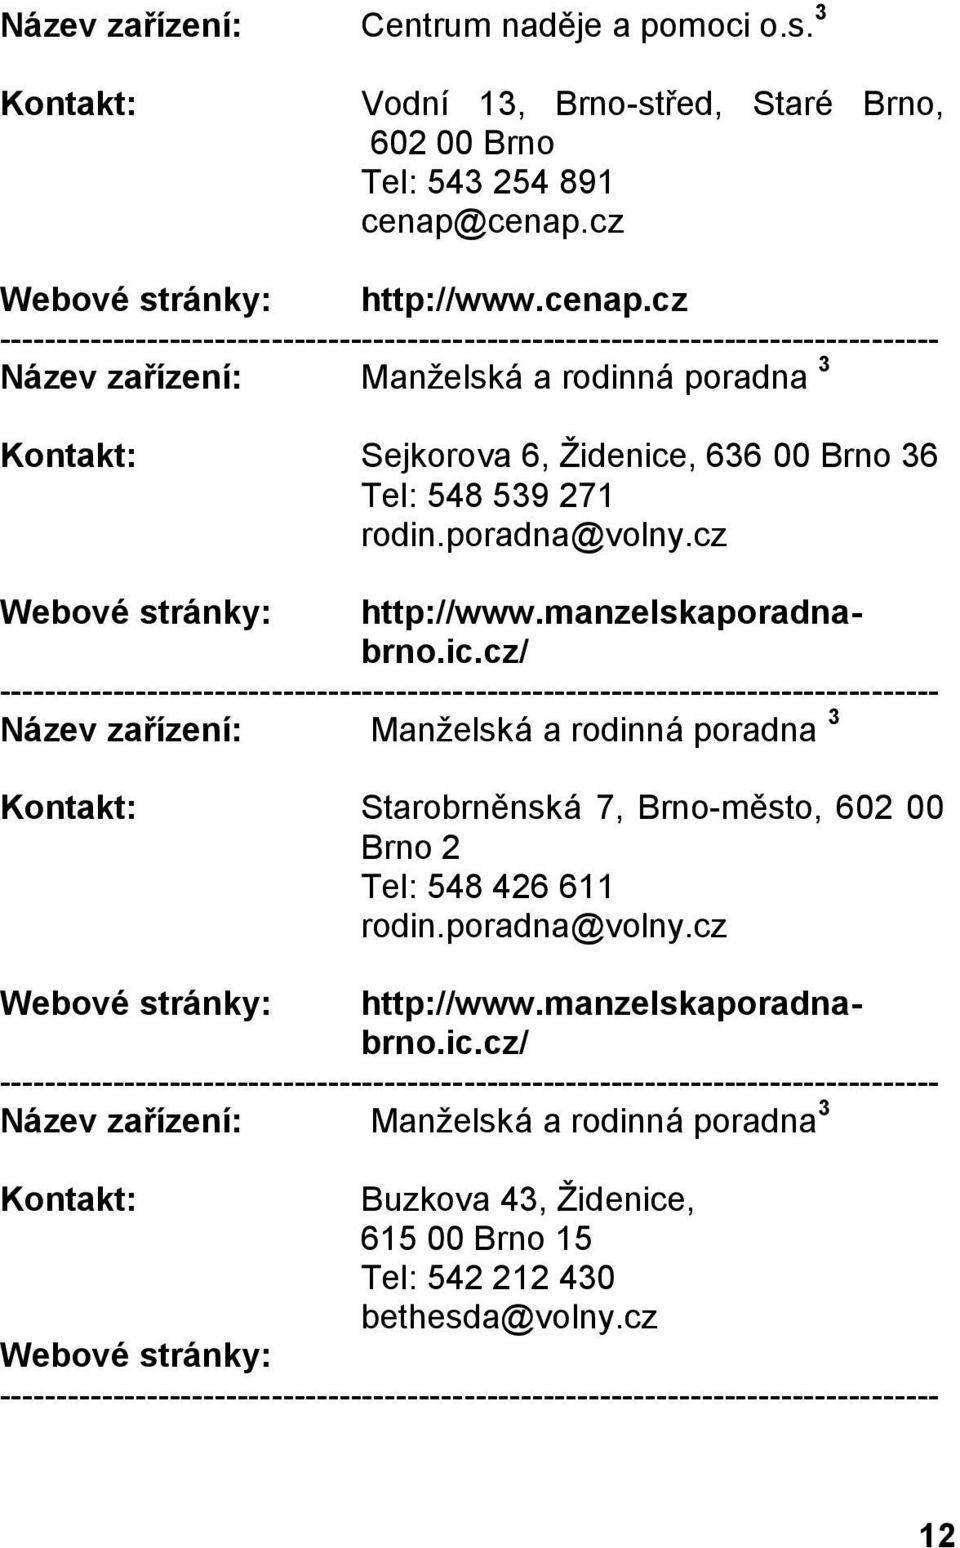 poradna@volny.cz Starobrněnská 7, Brno-město, 602 00 Brno 2 Tel: 548 426 611 rodin.poradna@volny.cz http://www.manzelskaporadnabrno.ic.